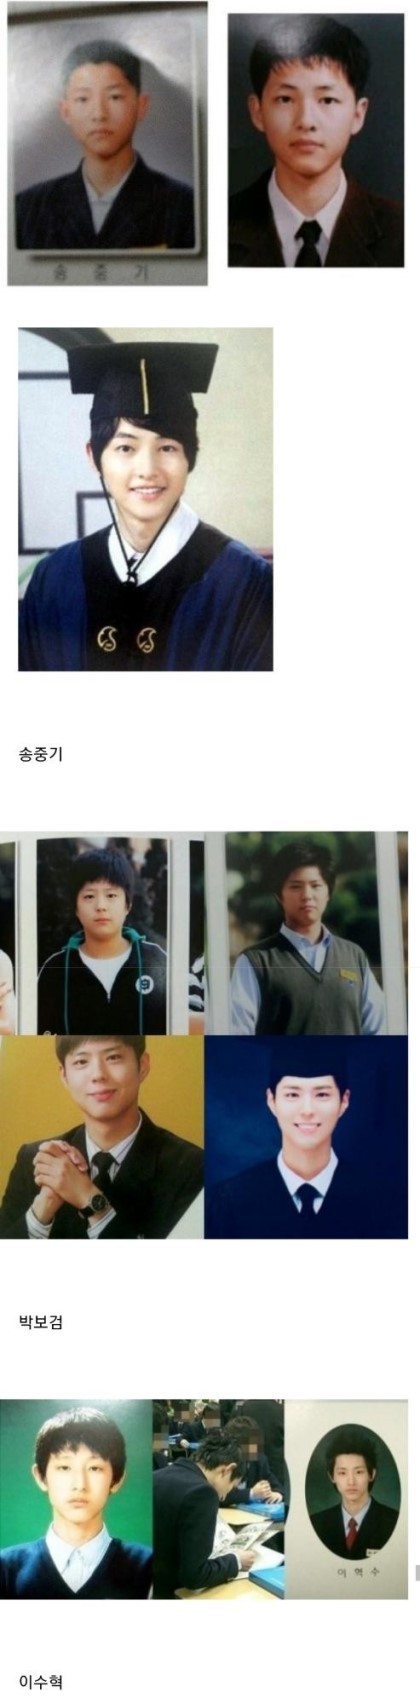 nokbeon.net-한국 남자배우들 졸업사진.jpg-1번 이미지